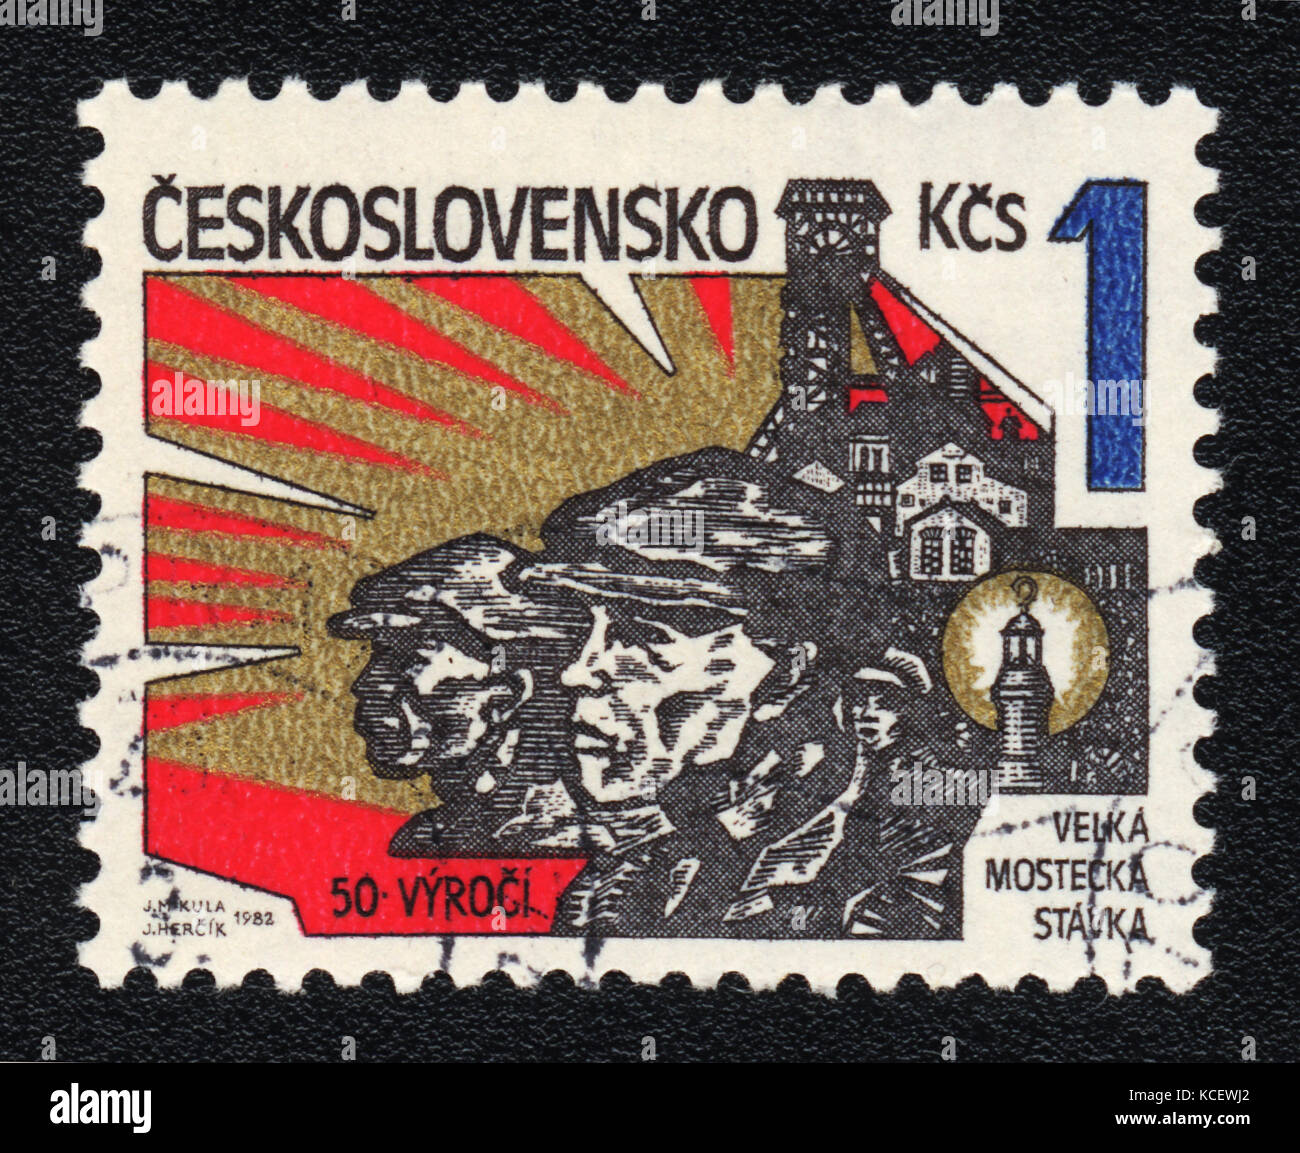 Eine Briefmarke in der Tschechoslowakei gedruckt zeigt die große Die meisten Streik, ca. 1982 Stockfoto